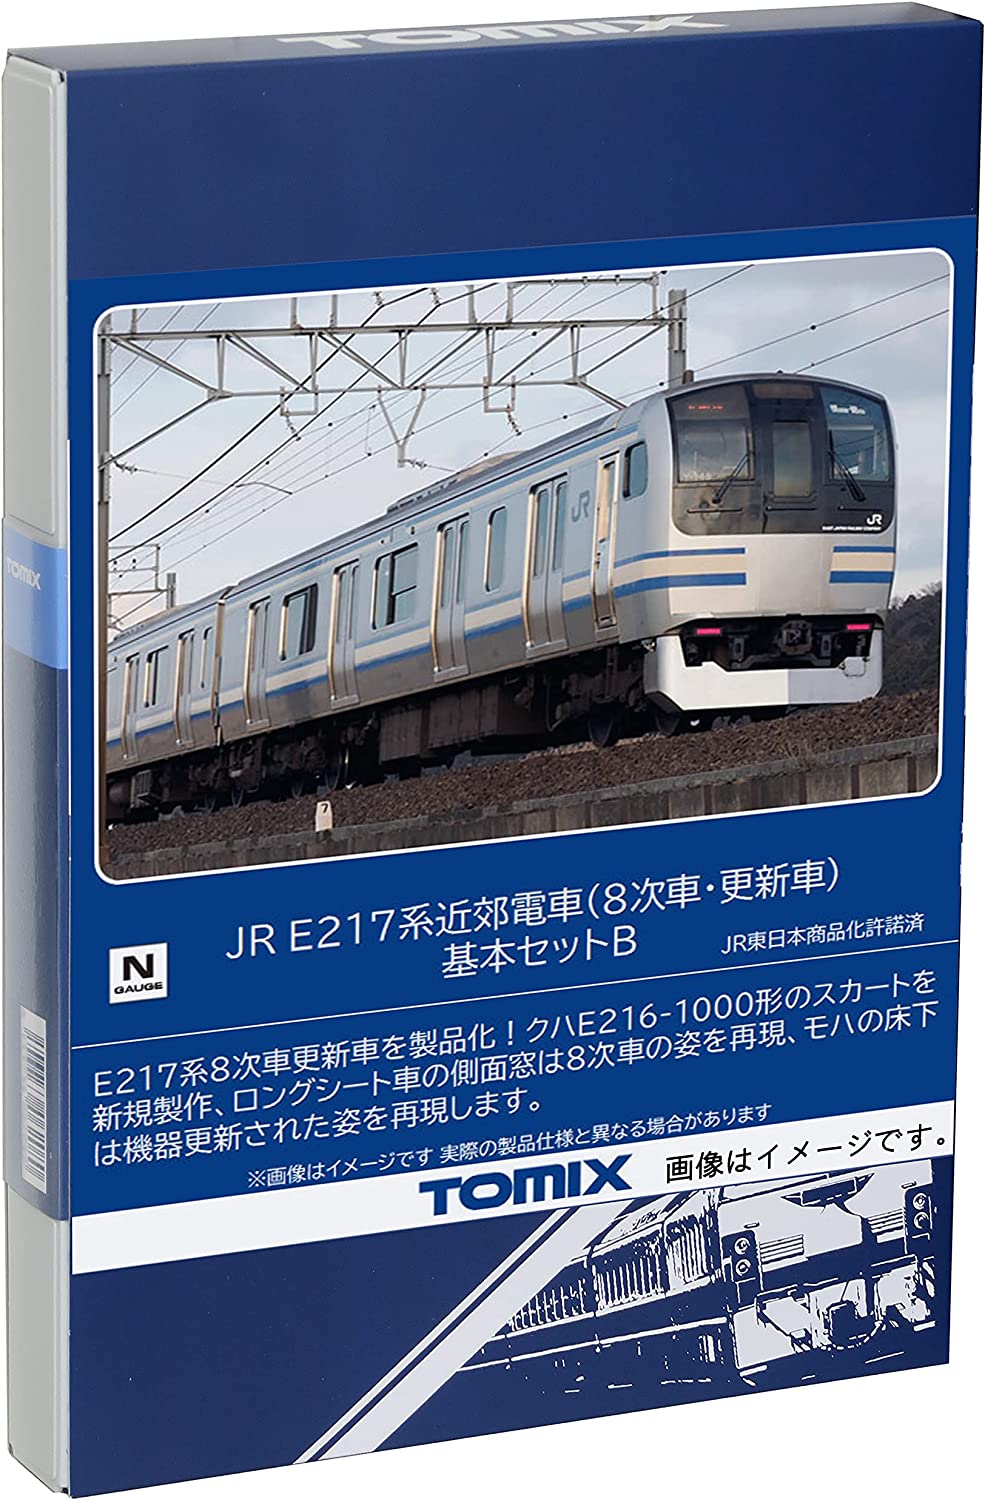 [PO AUG 2023] 98829 J.R. Suburban Train Series E217 (8th Edition